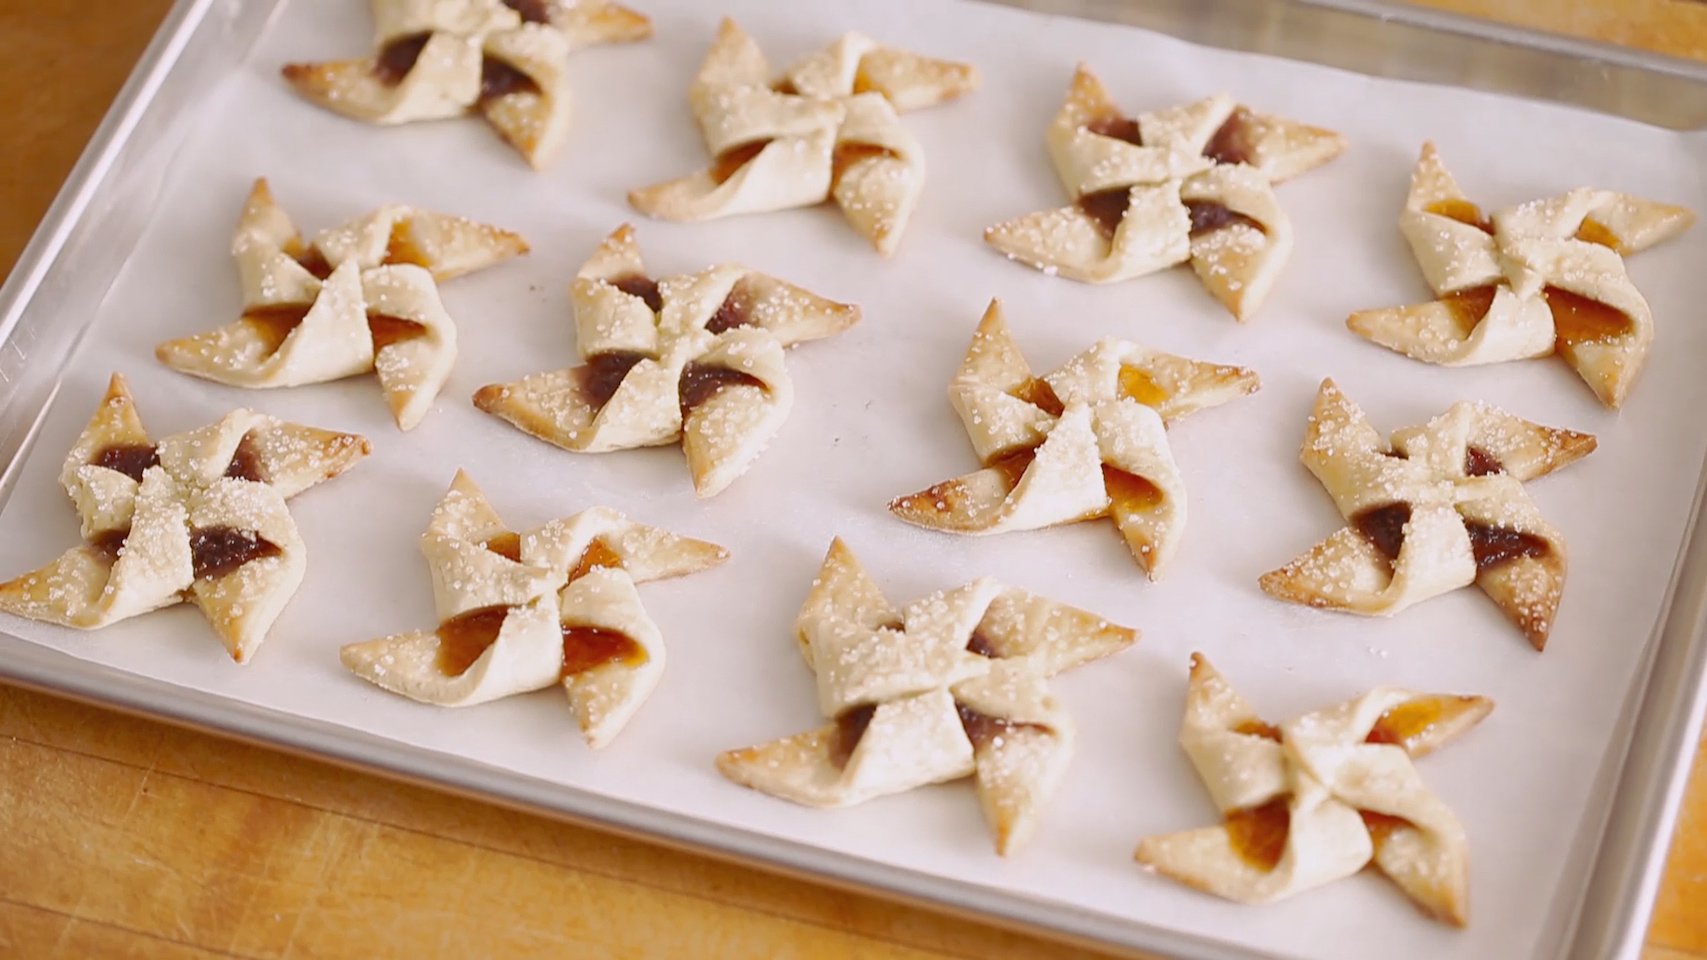 jam pinwheel cookies - perfect christmas cookies